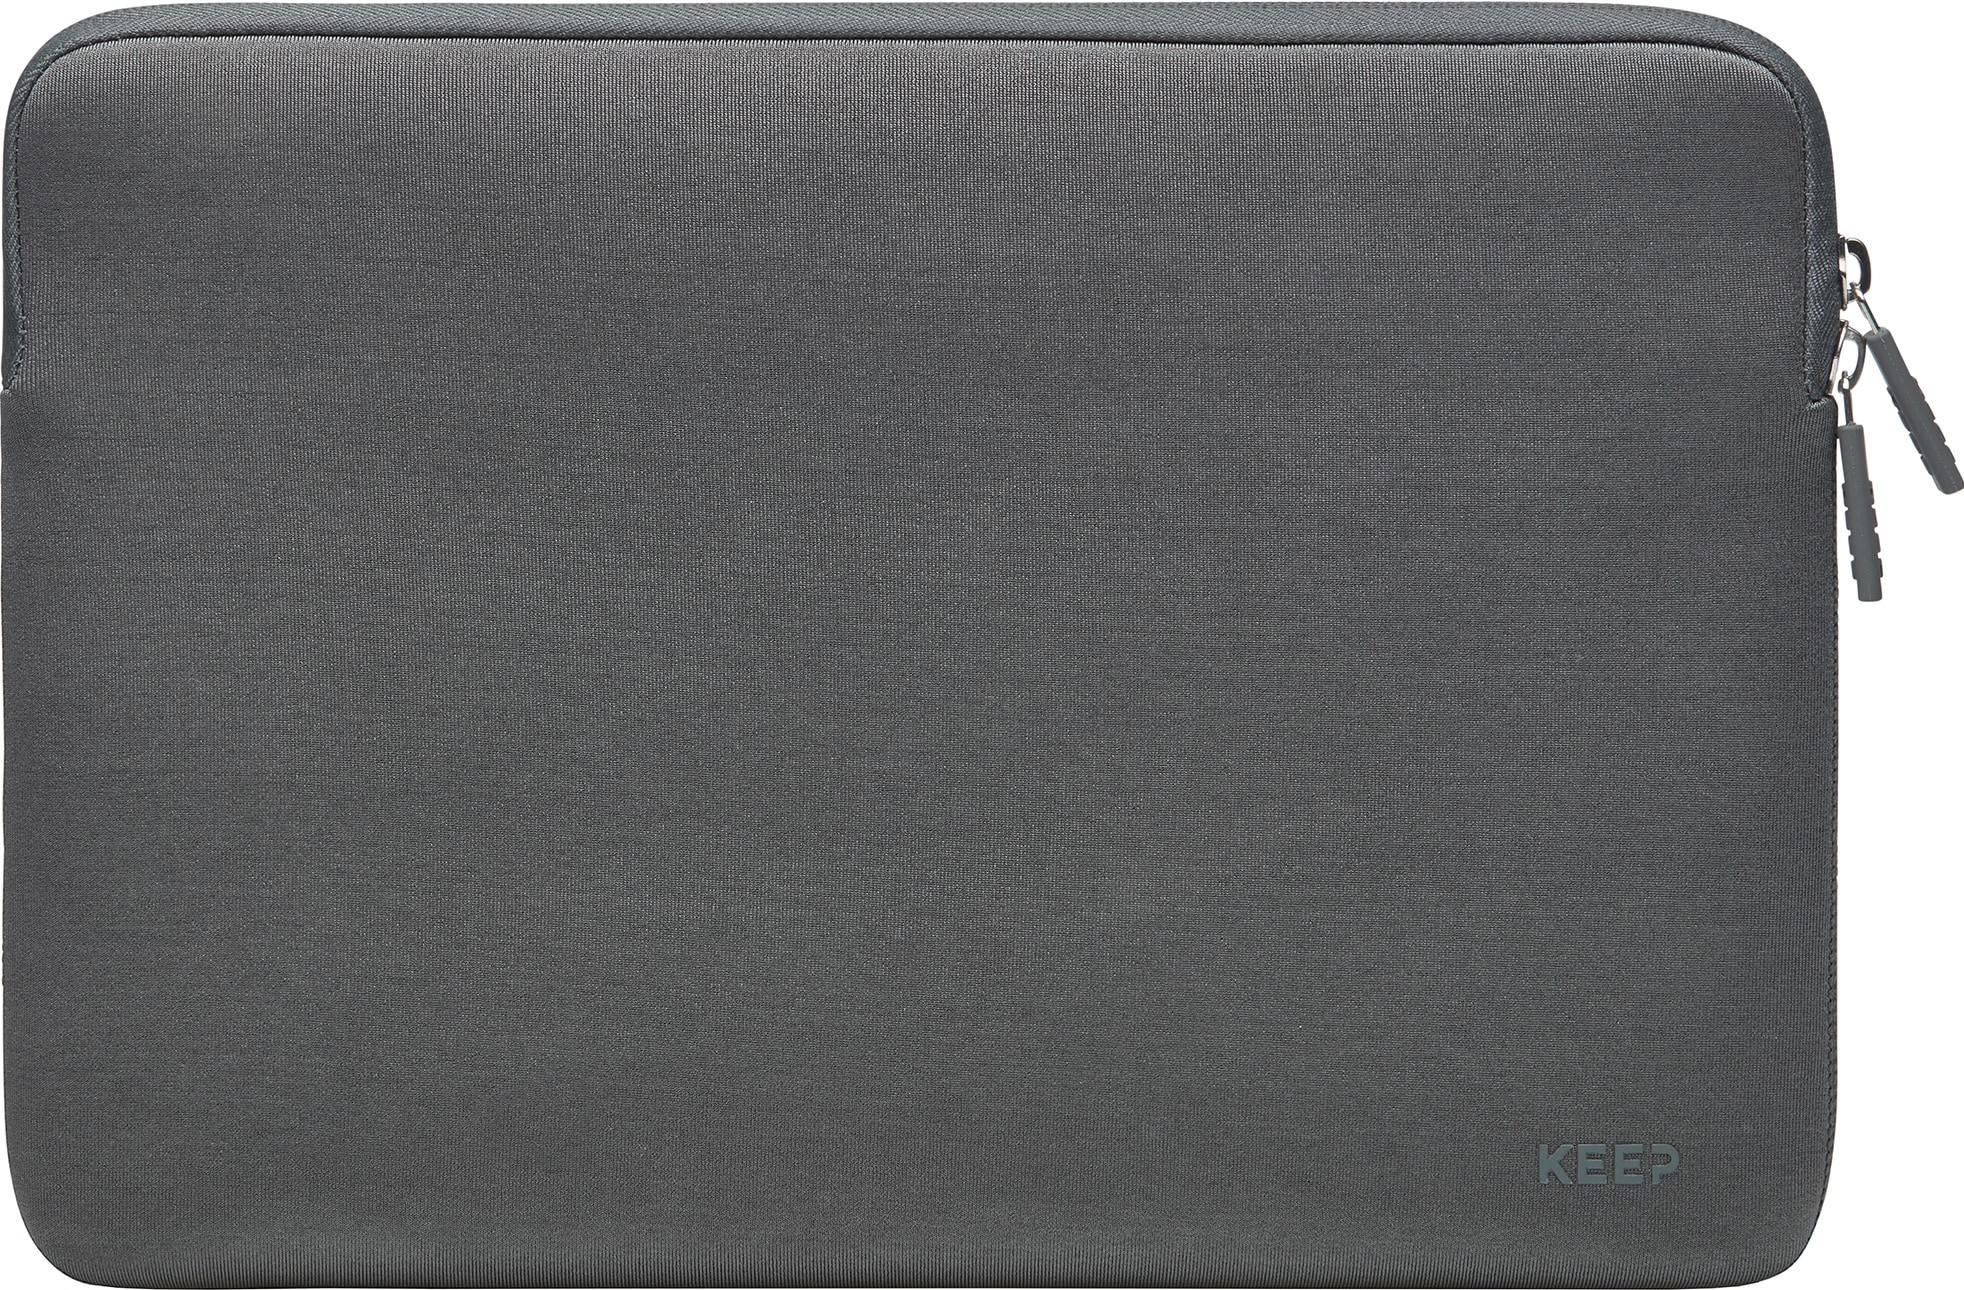 KEEP etui til MacBook 13" (mørk grå) - Elkjøp